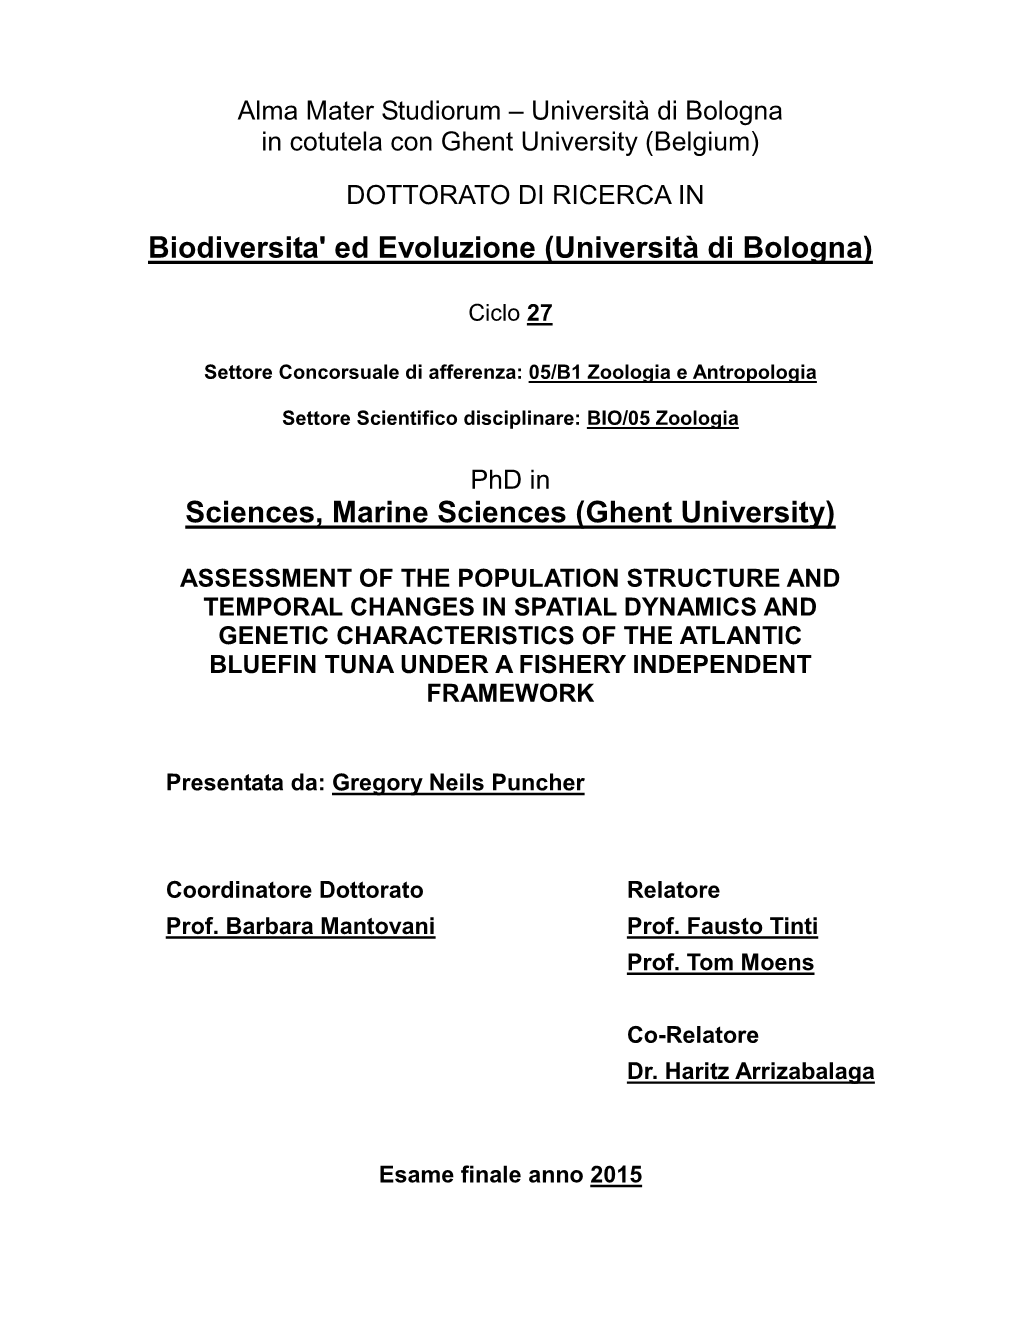 Biodiversita' Ed Evoluzione (Università Di Bologna)